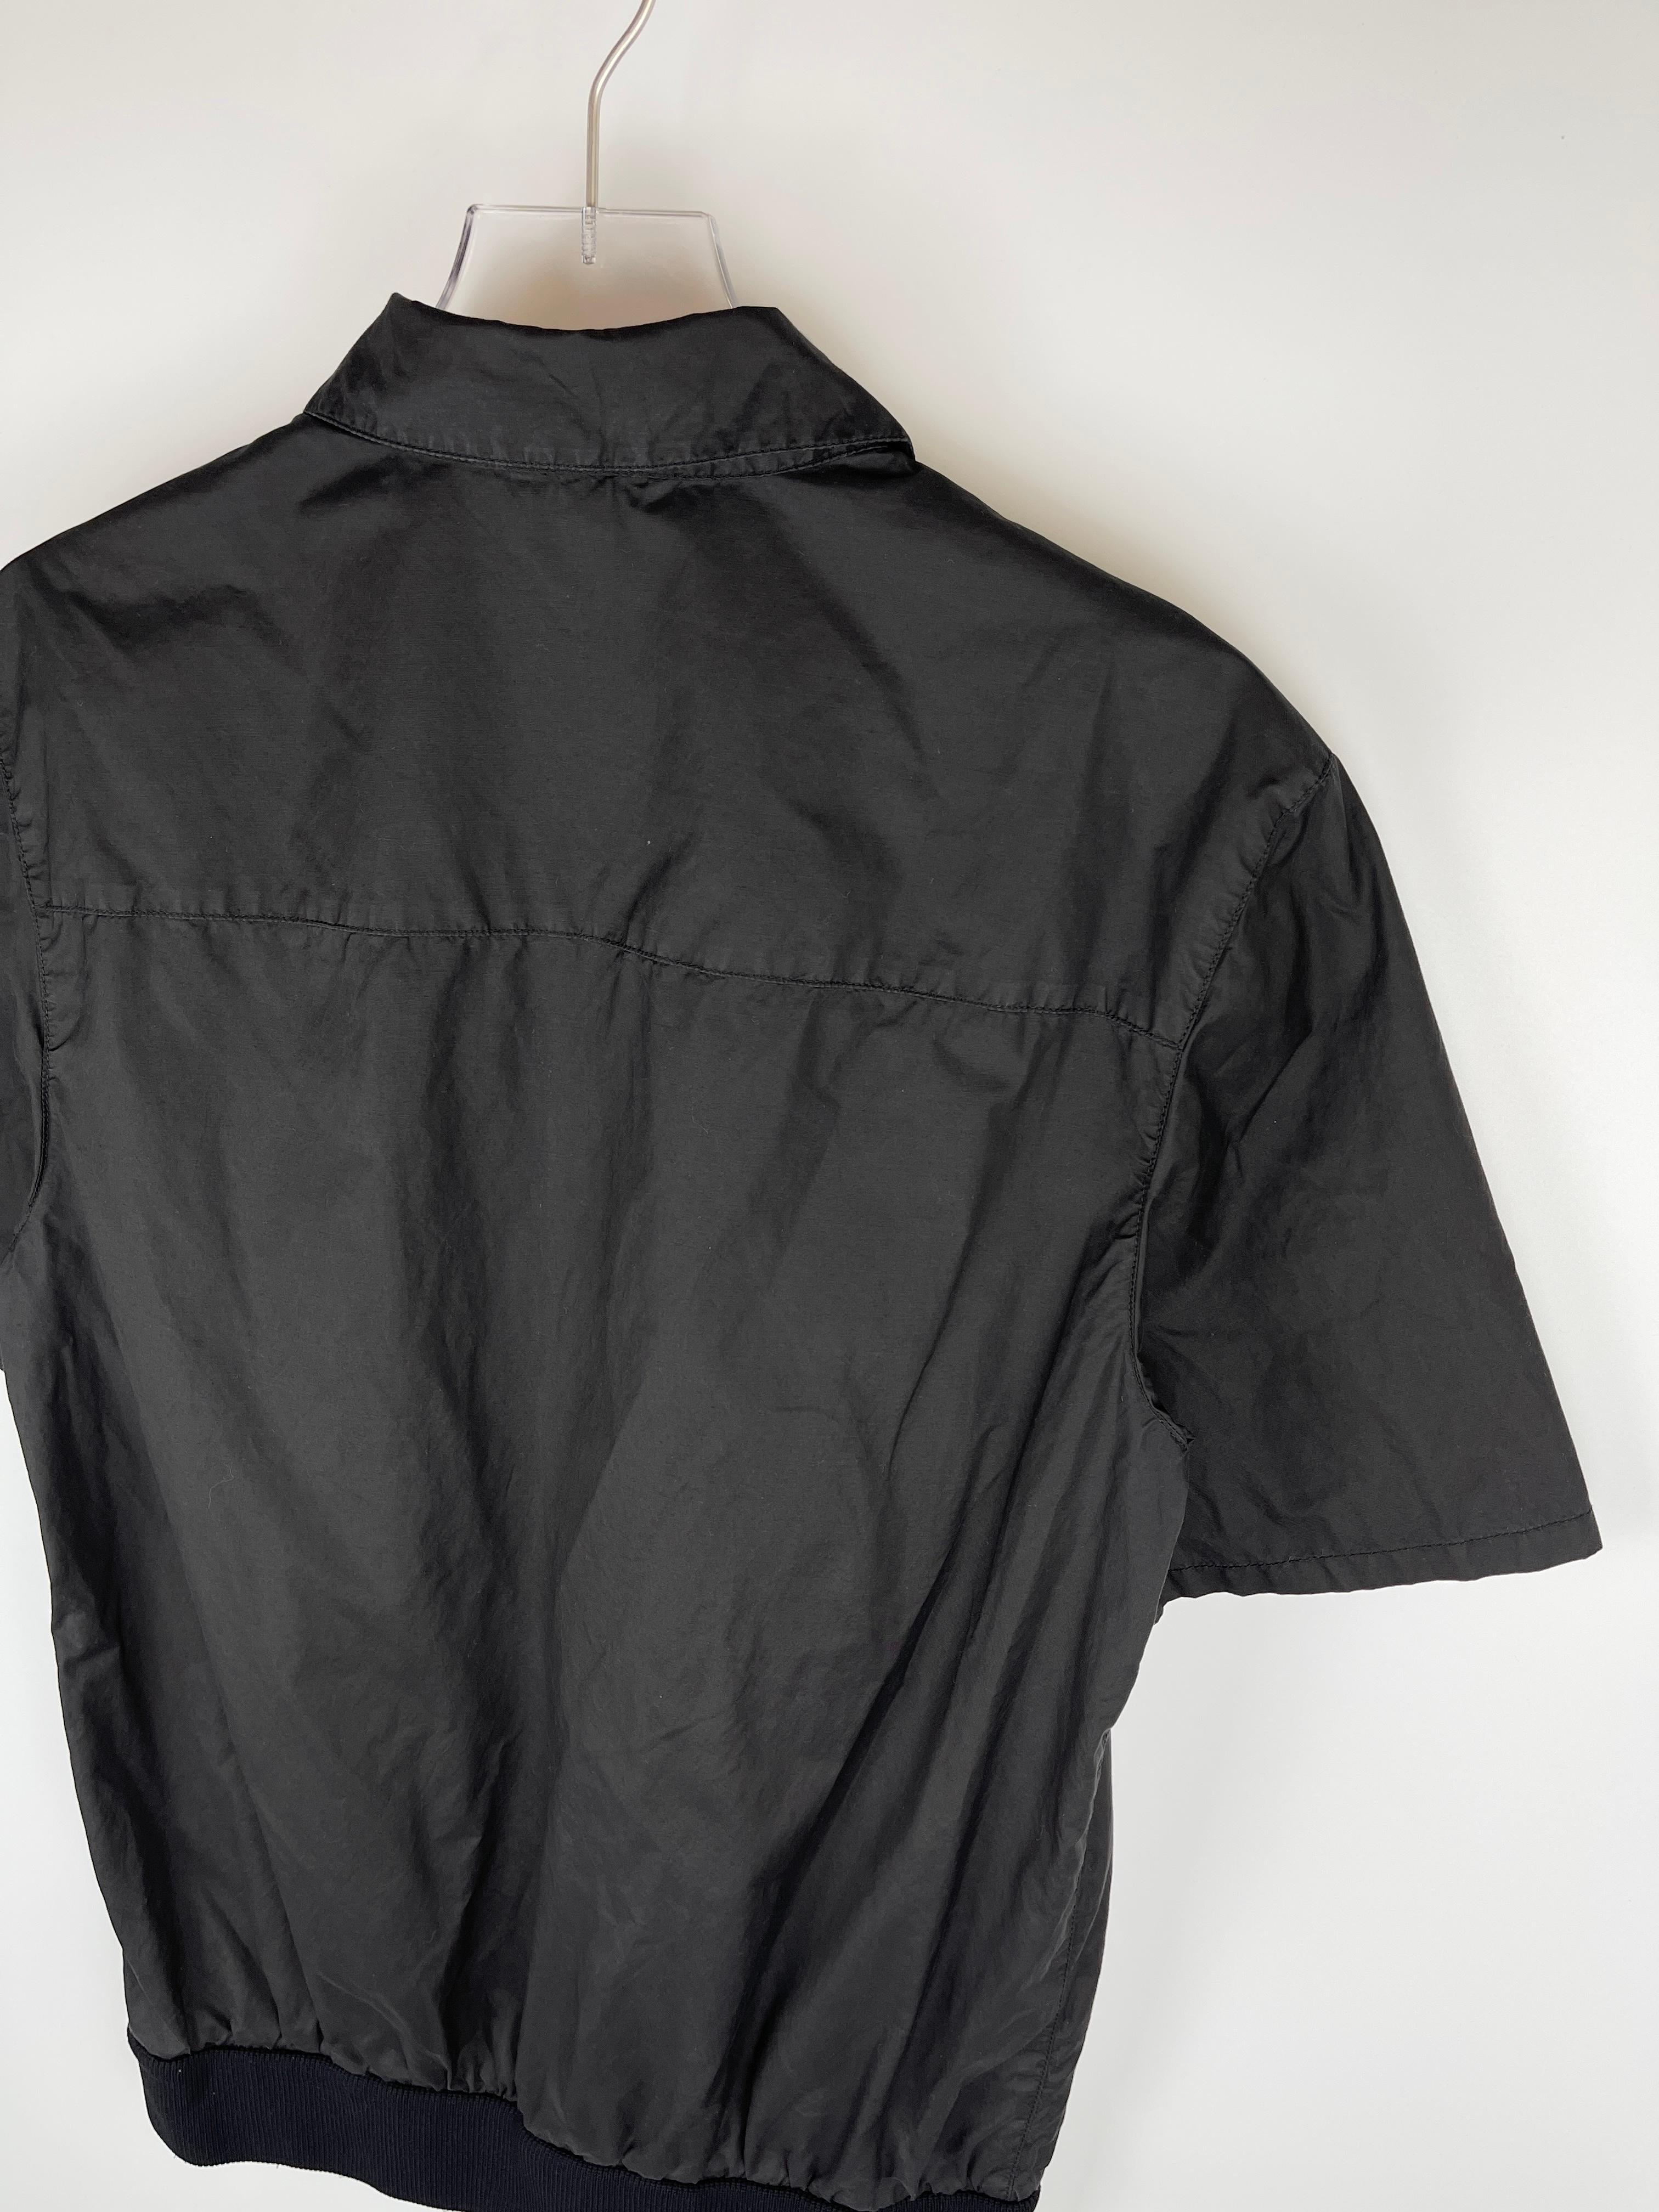 Women's or Men's Miu Miu A/W2000 Zip-Up Military Shirt For Sale